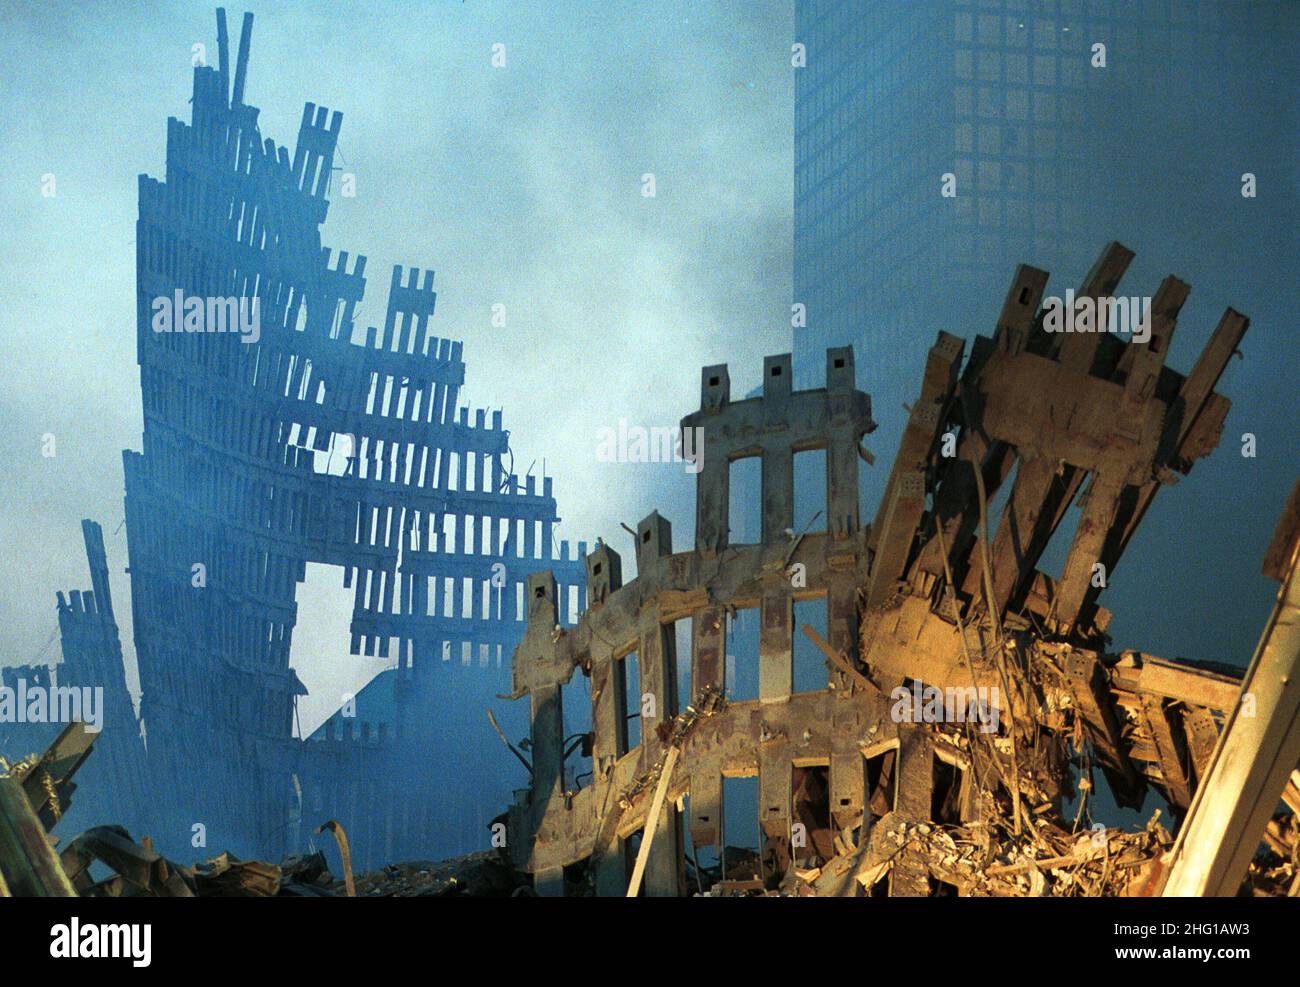 13-09-2001 NEW YORK ESTERI NELLA FOTO: I RESTI DEL WORLD TRADE CENTER ALLE PRIMO LUCI DELL'ALBA @LAPRESSE Stockfoto